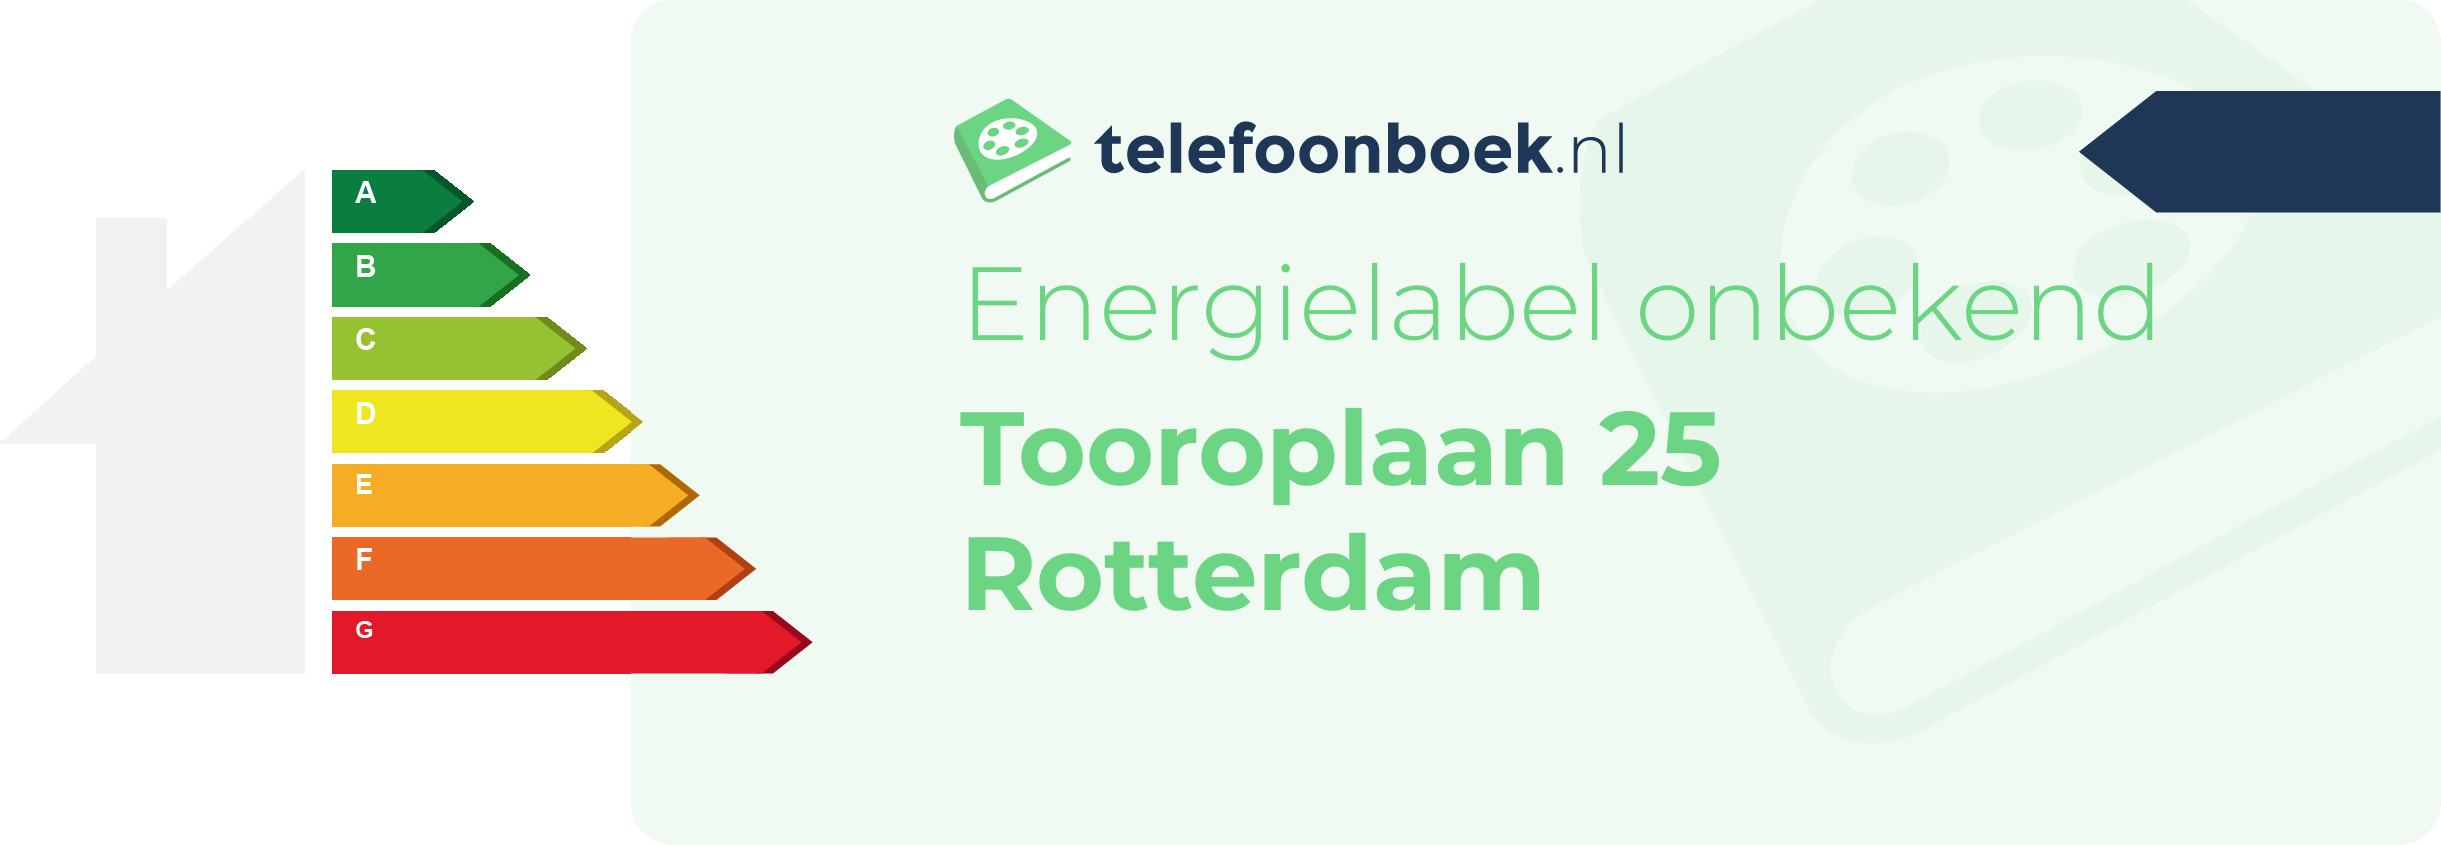 Energielabel Tooroplaan 25 Rotterdam